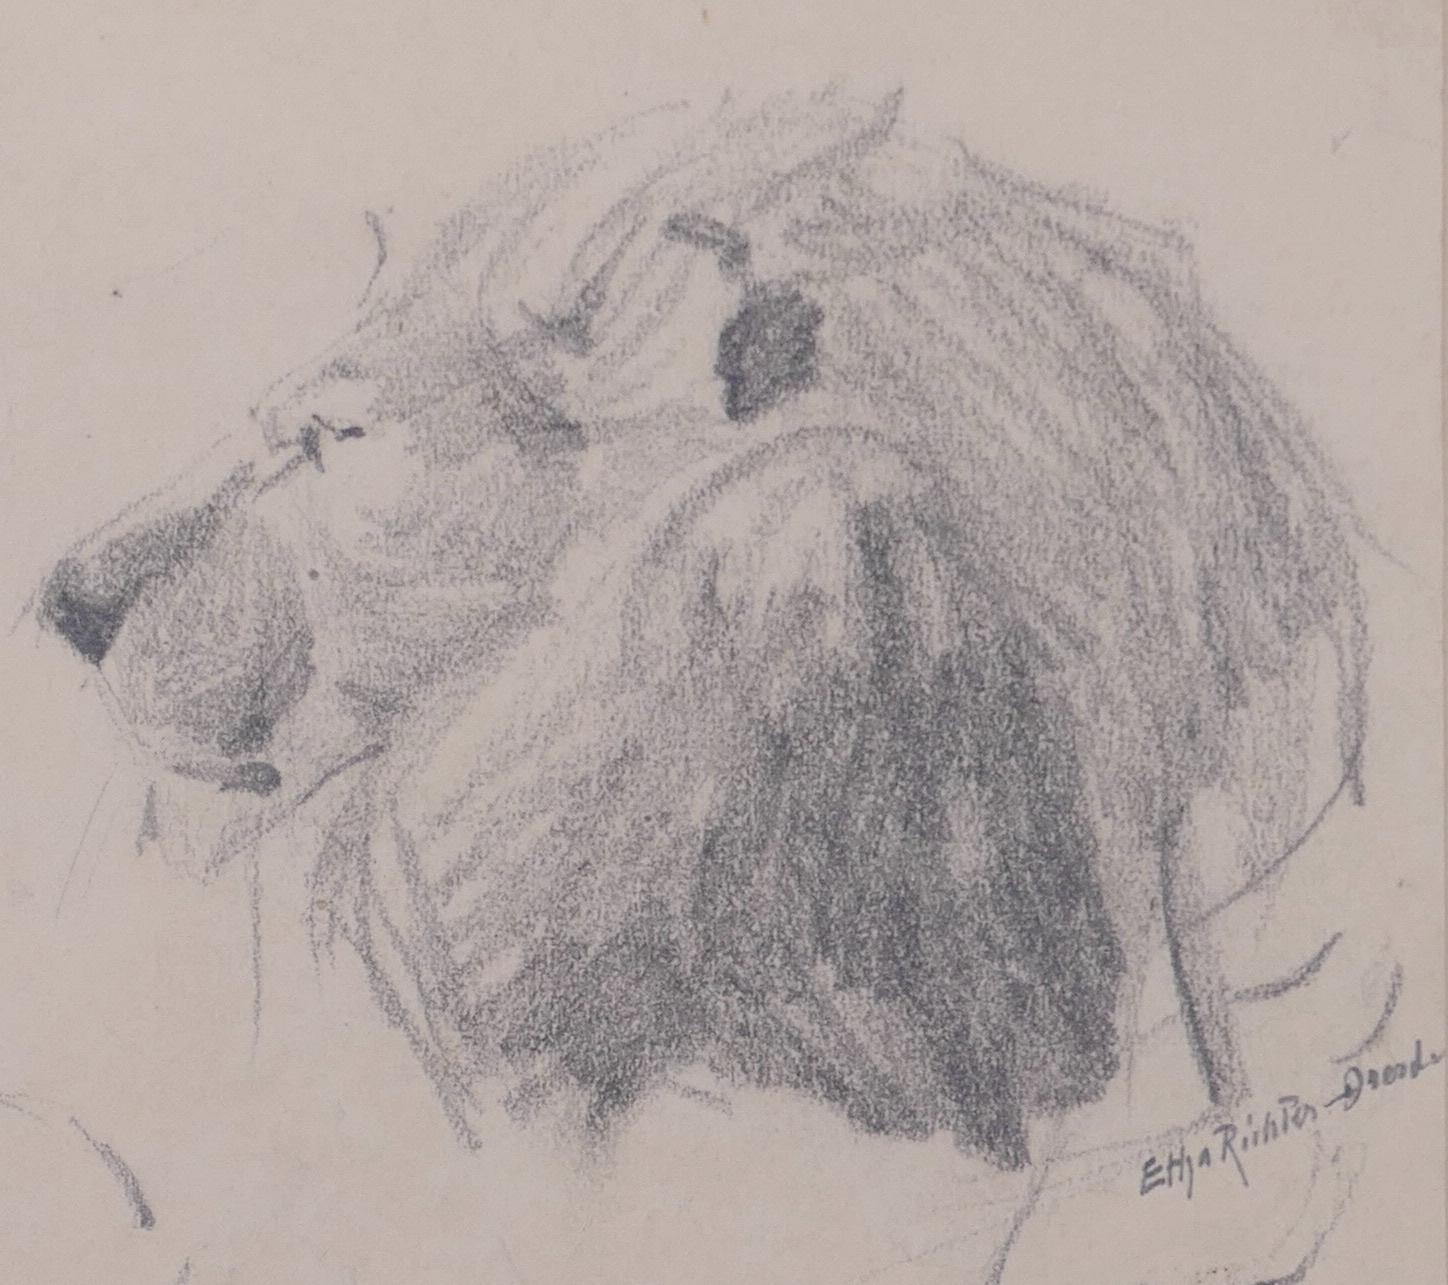 Der Löwe ist eine Original-Bleistiftzeichnung der deutschen Künstlerin Etha Richter (Dresda,1883 - Dresda,1977).

Rechts unten in Blei handsigniert: Etha Richter - Dresden. 

Auf dem Papier, in das die Zeichnung eingeklebt ist, hat der Künstler noch